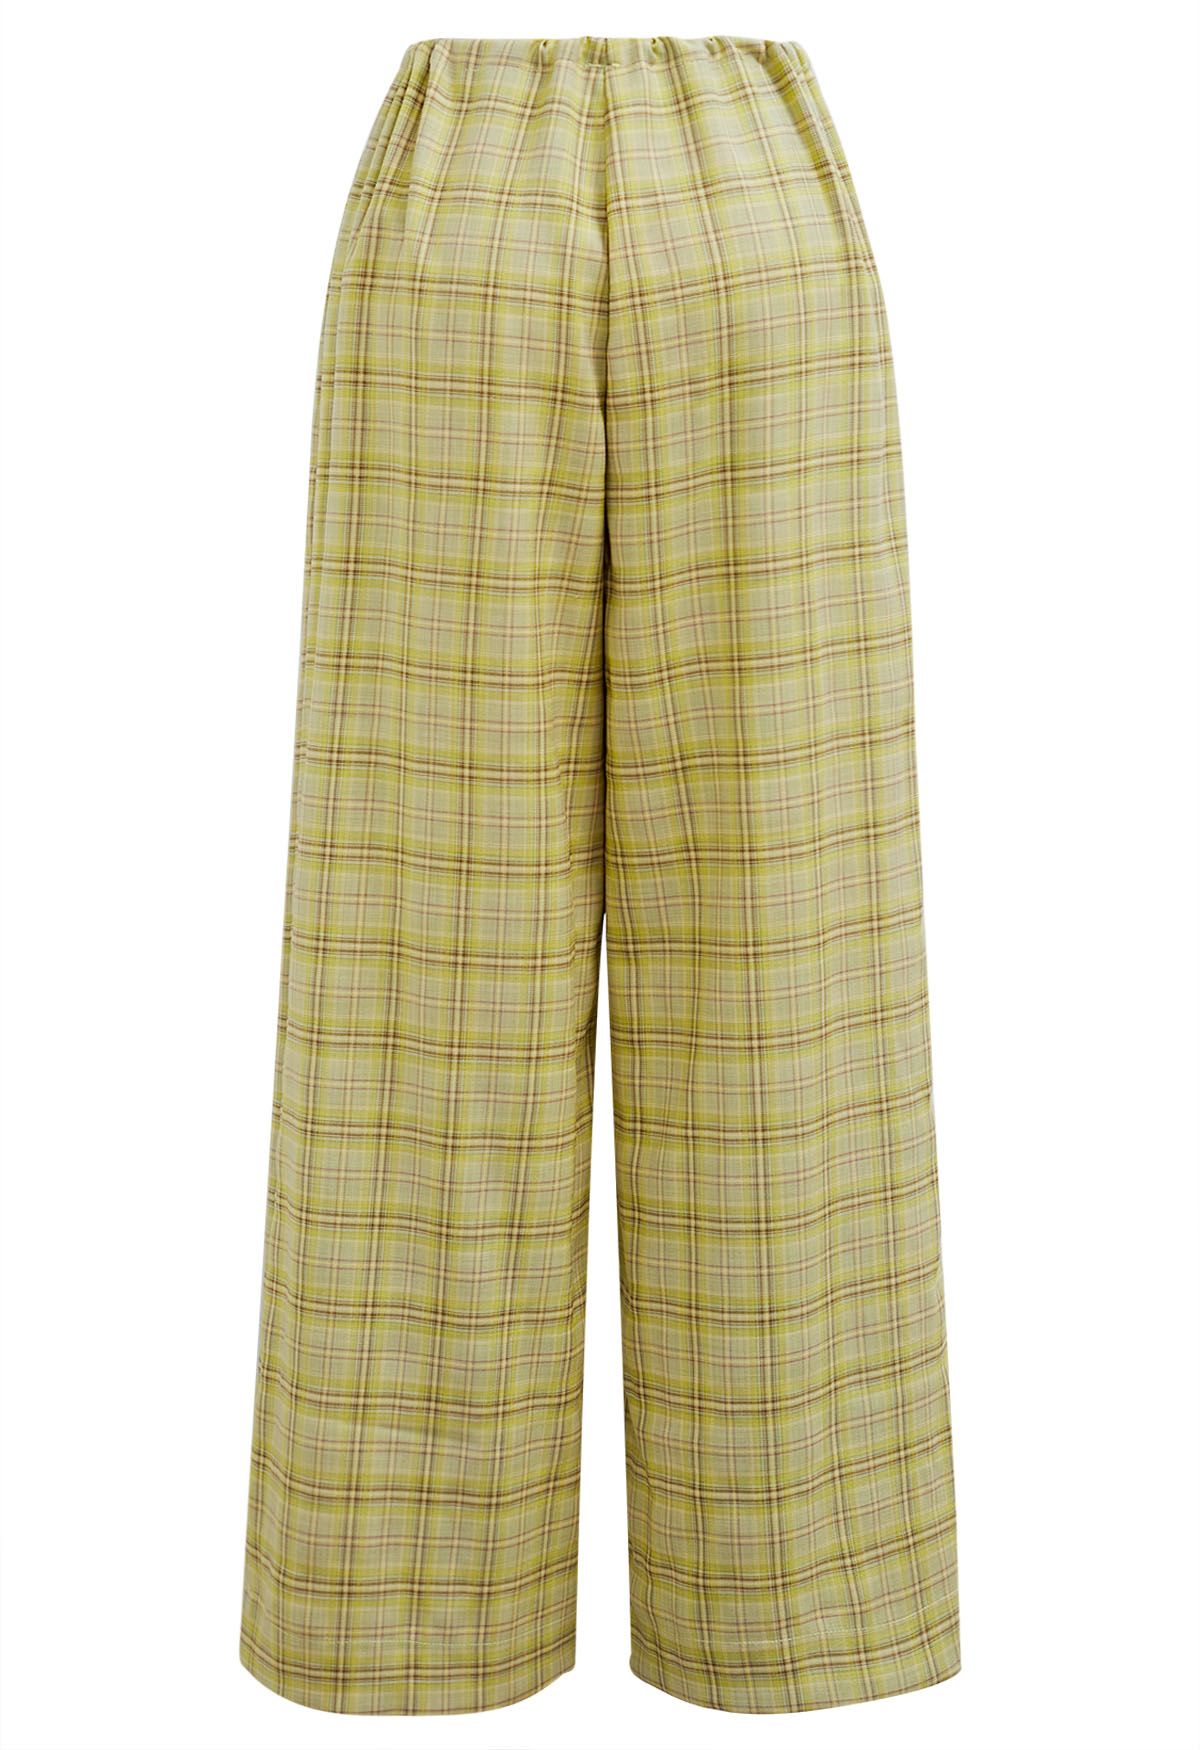 Pantalon à motif écossais avec cordon de serrage à la taille, couleur citron vert